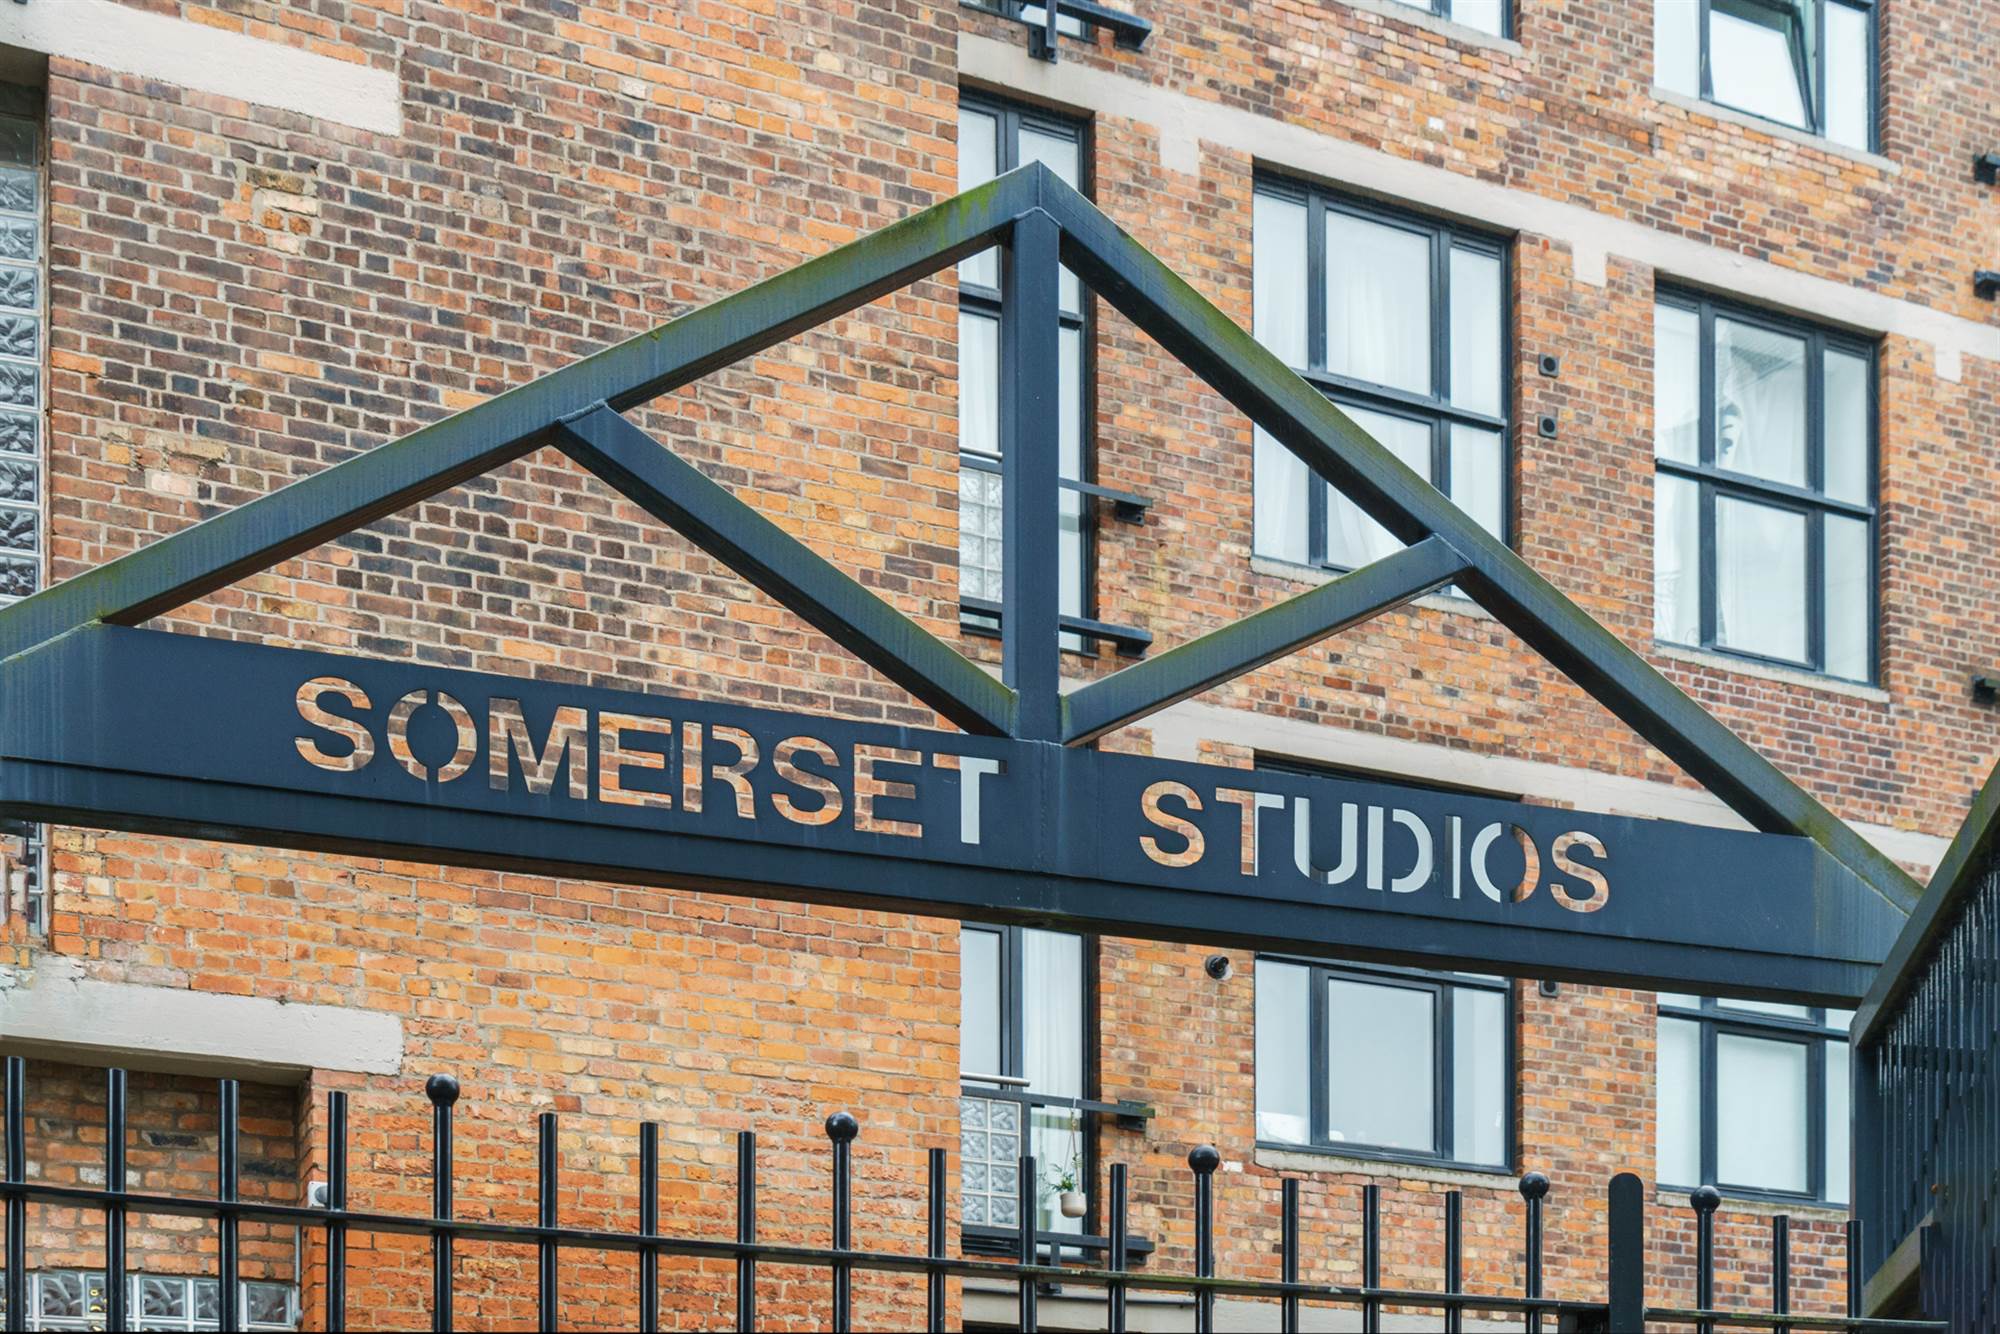 608 Somerset Studios